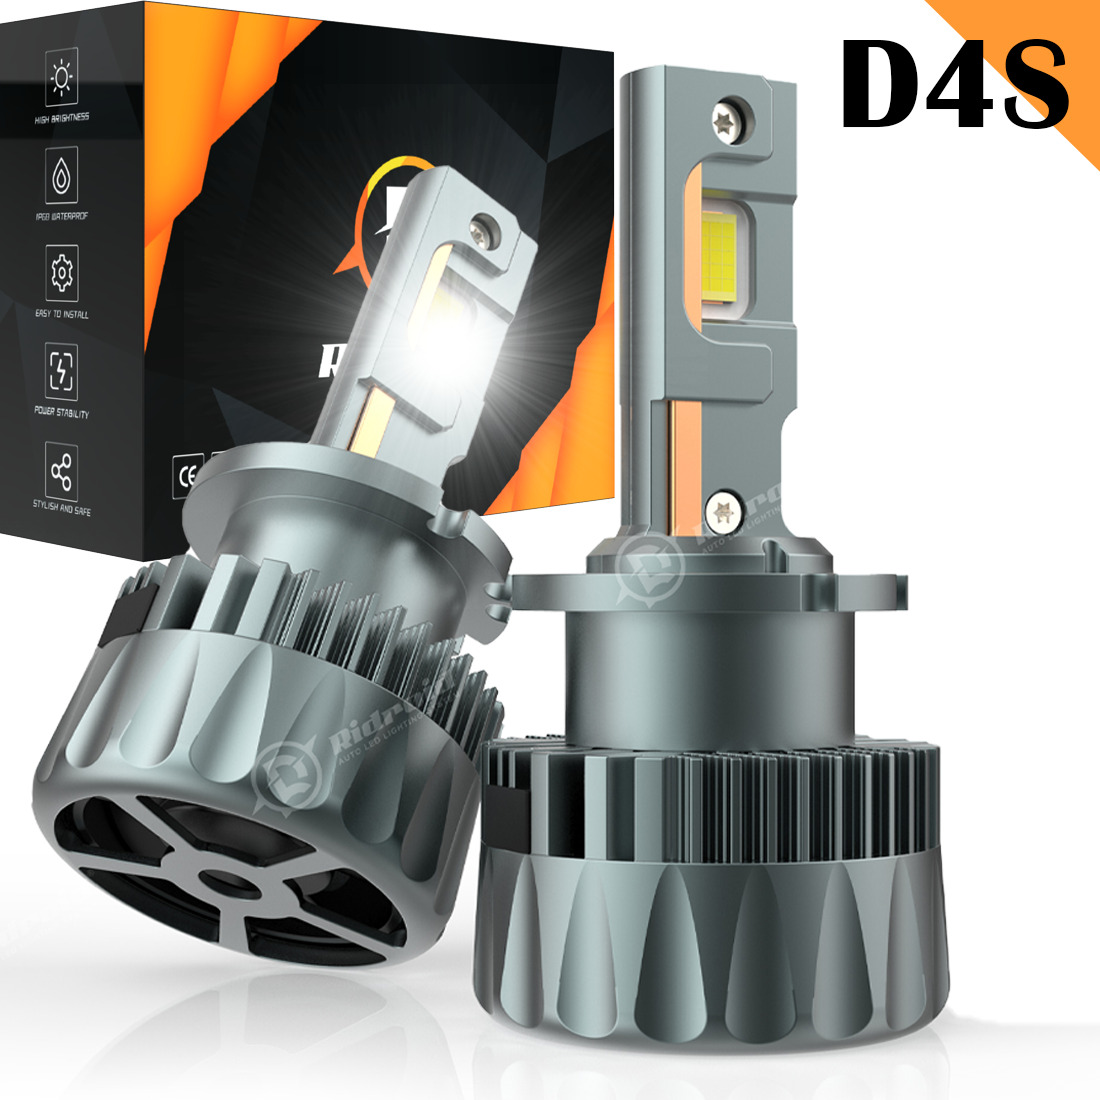 2PCS D4S/D4R LED Headlight Replace HID Xenon Super Bright White Conversion Kit